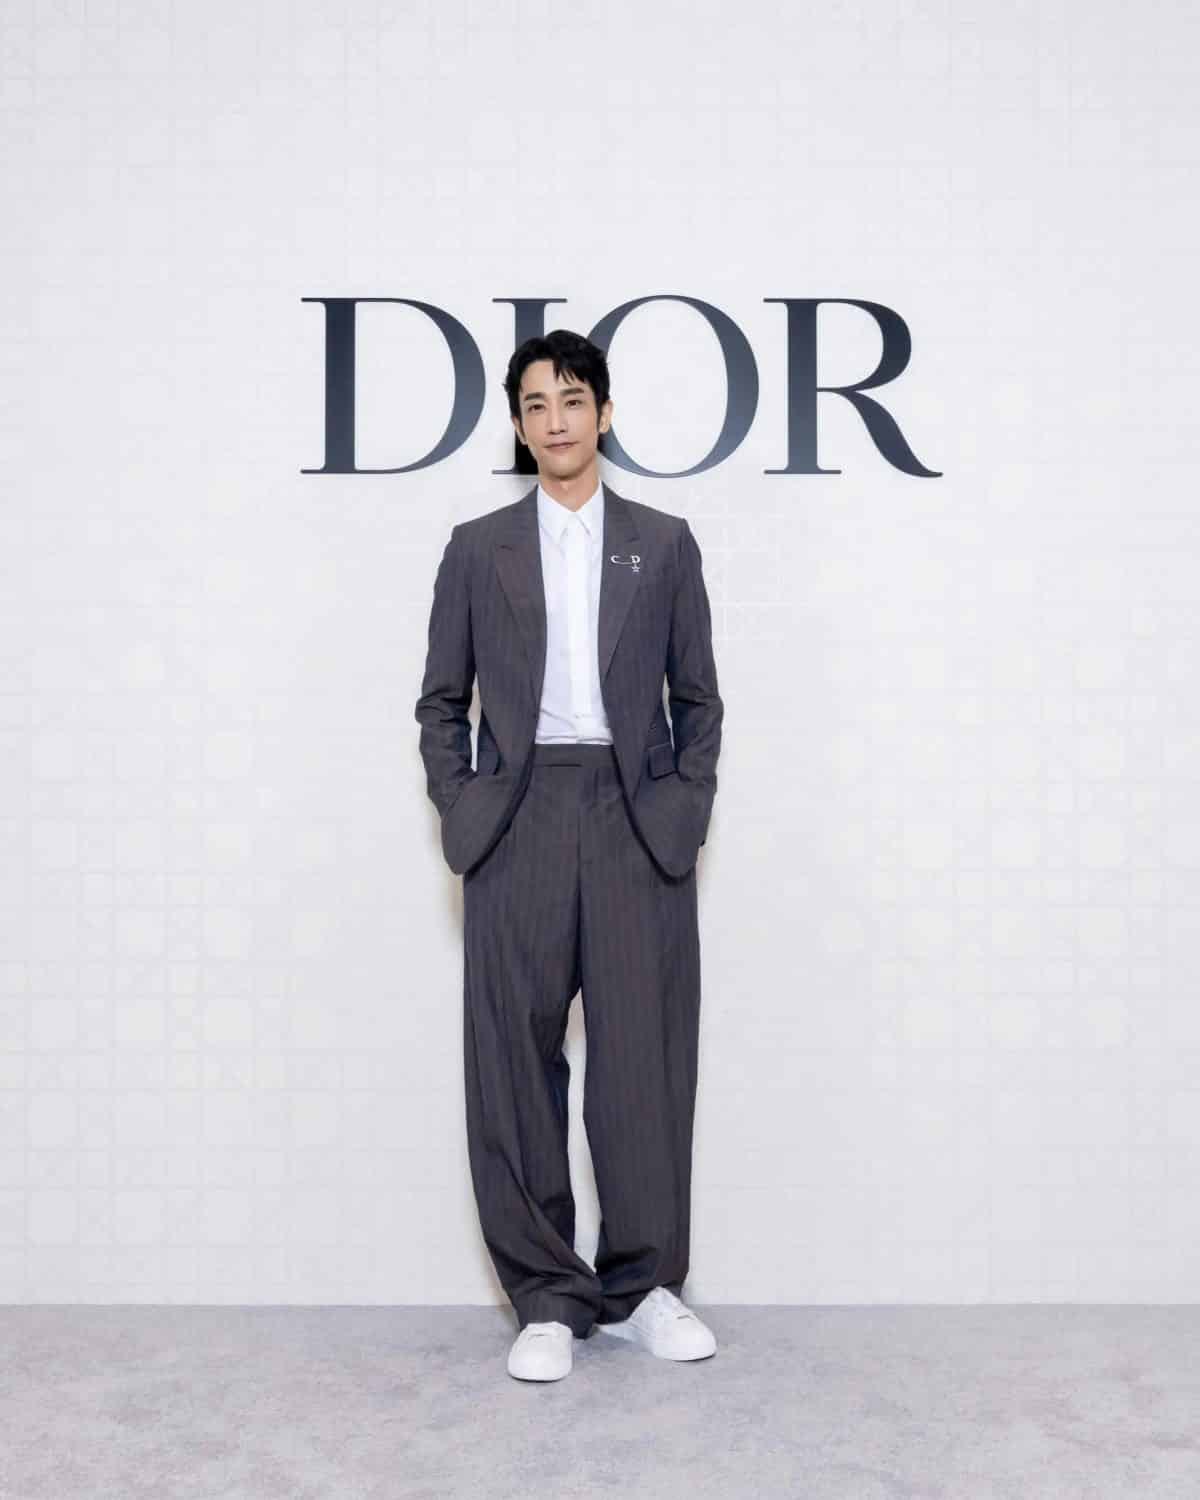 Азиатские знаменитости на открытии нового бутика Dior в Тайбэе